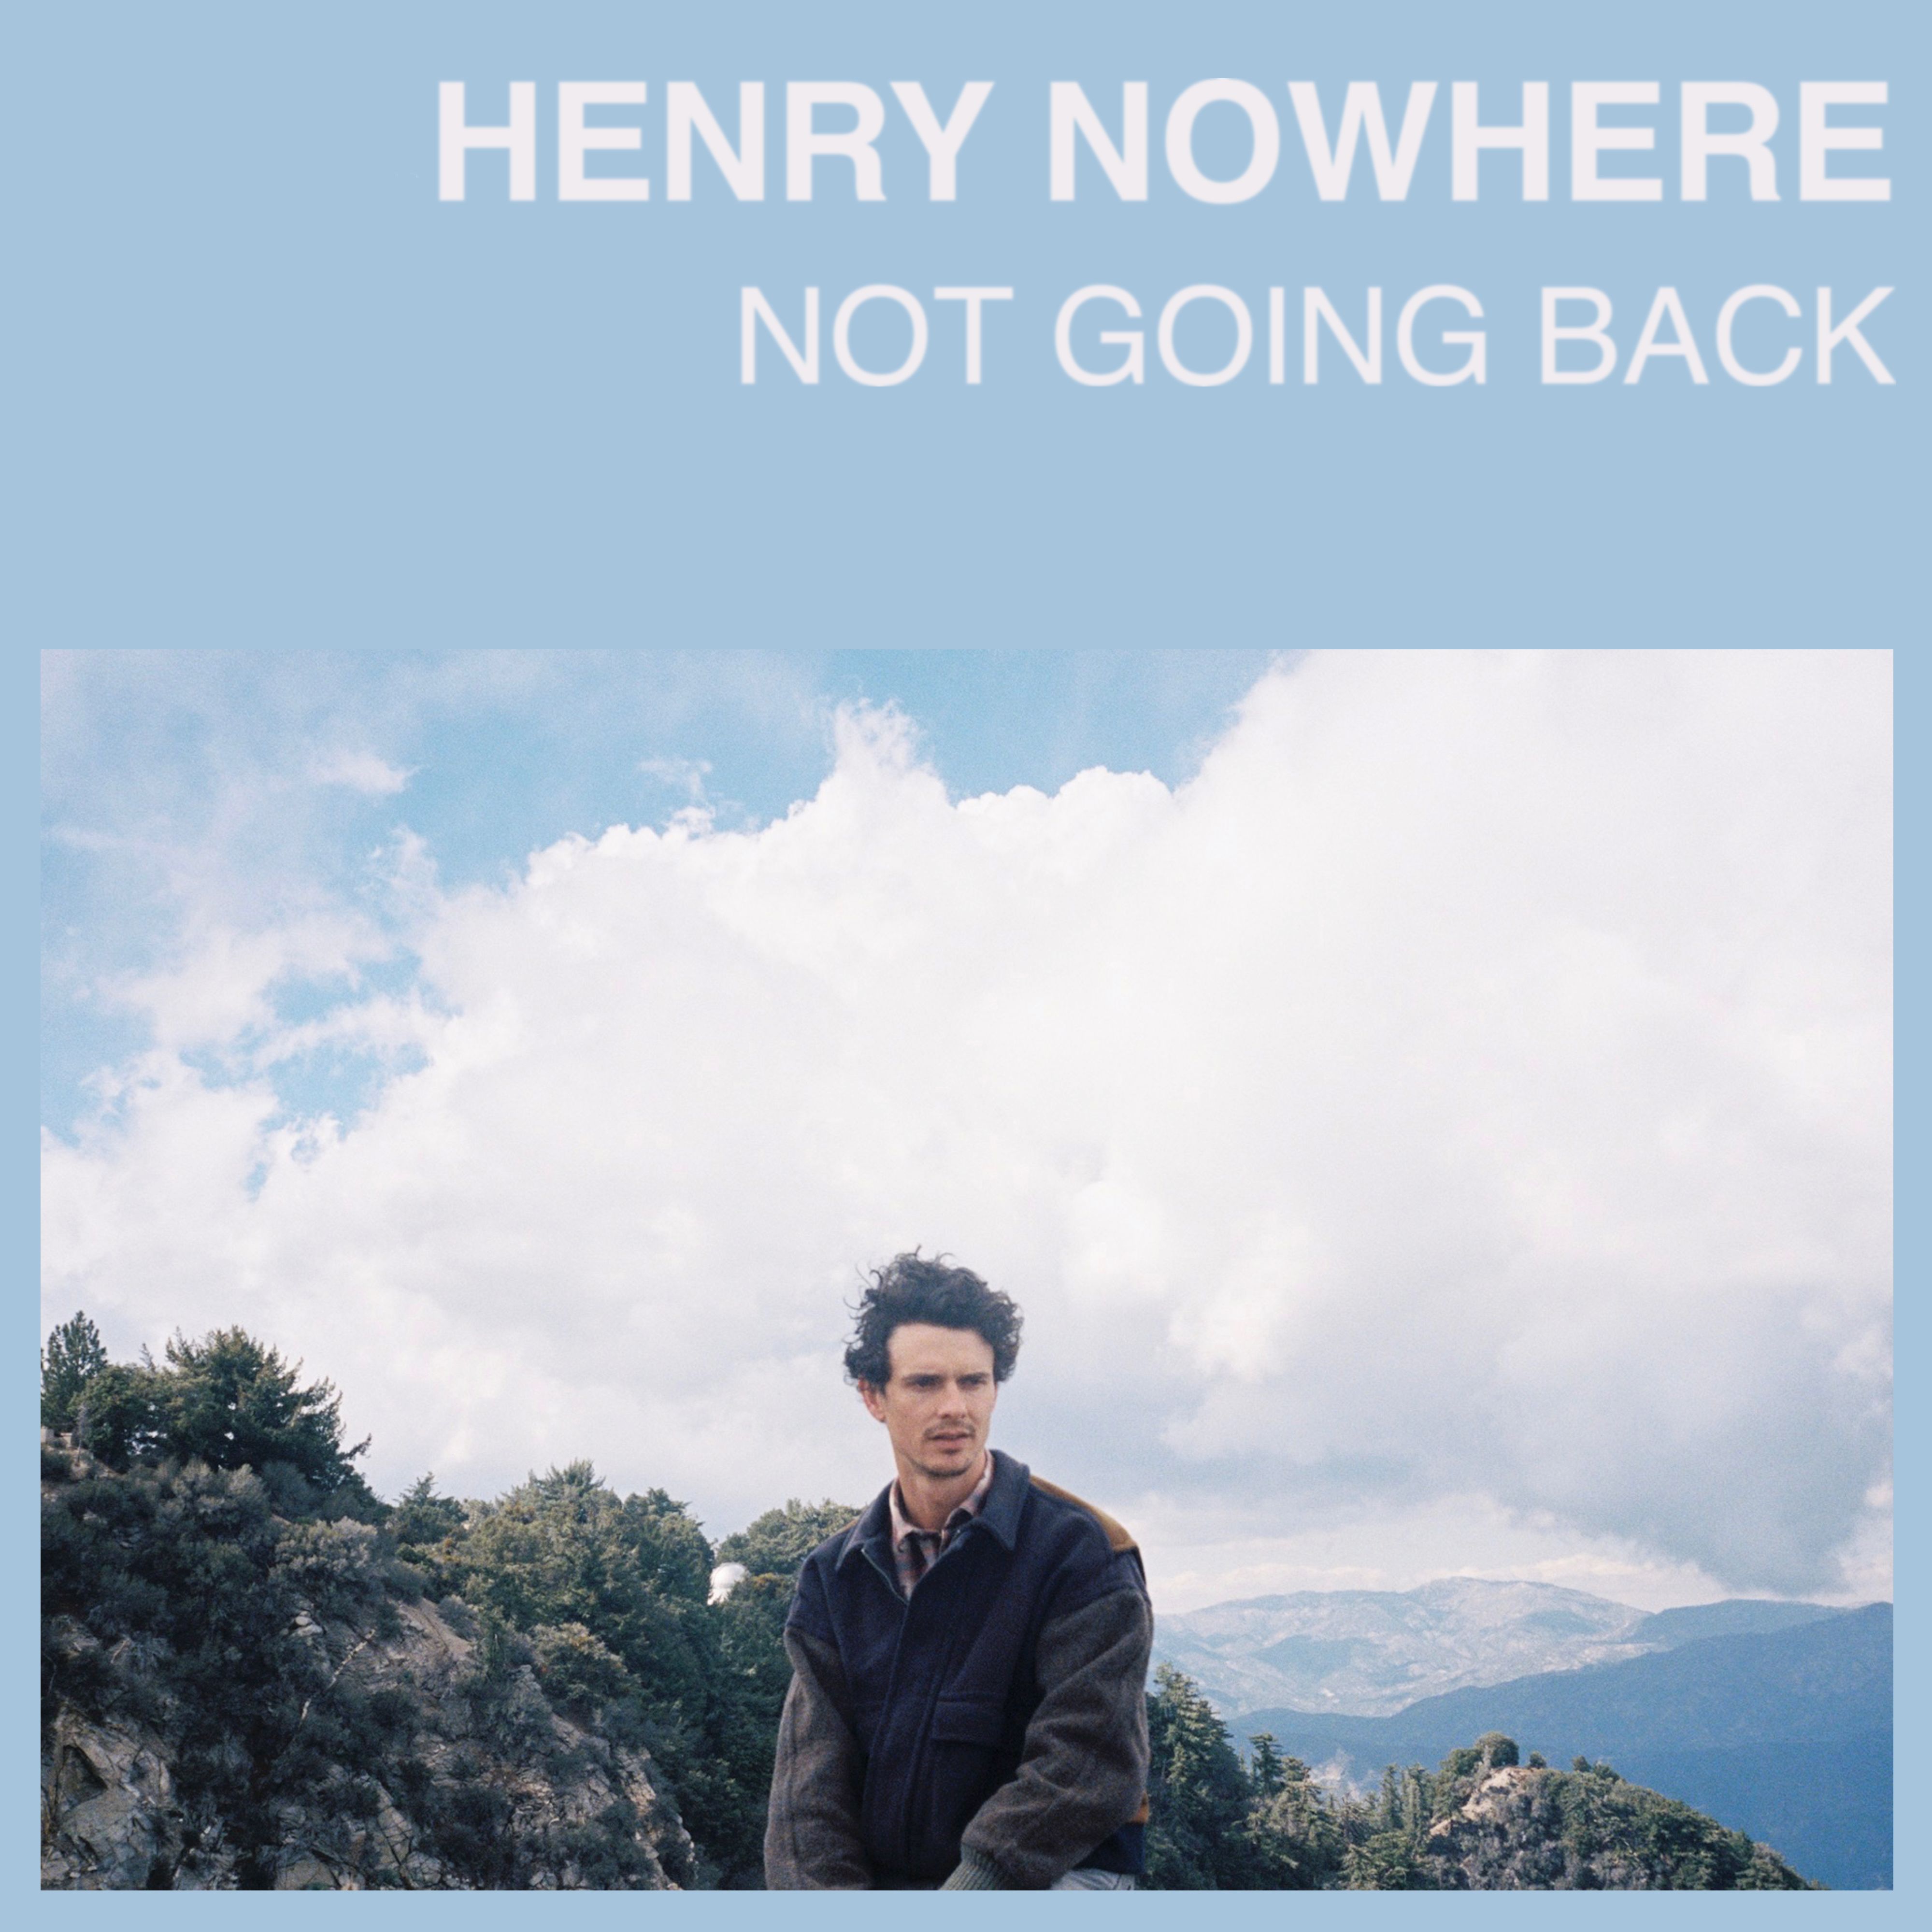 Henry Nowhere – “Not Going Back”